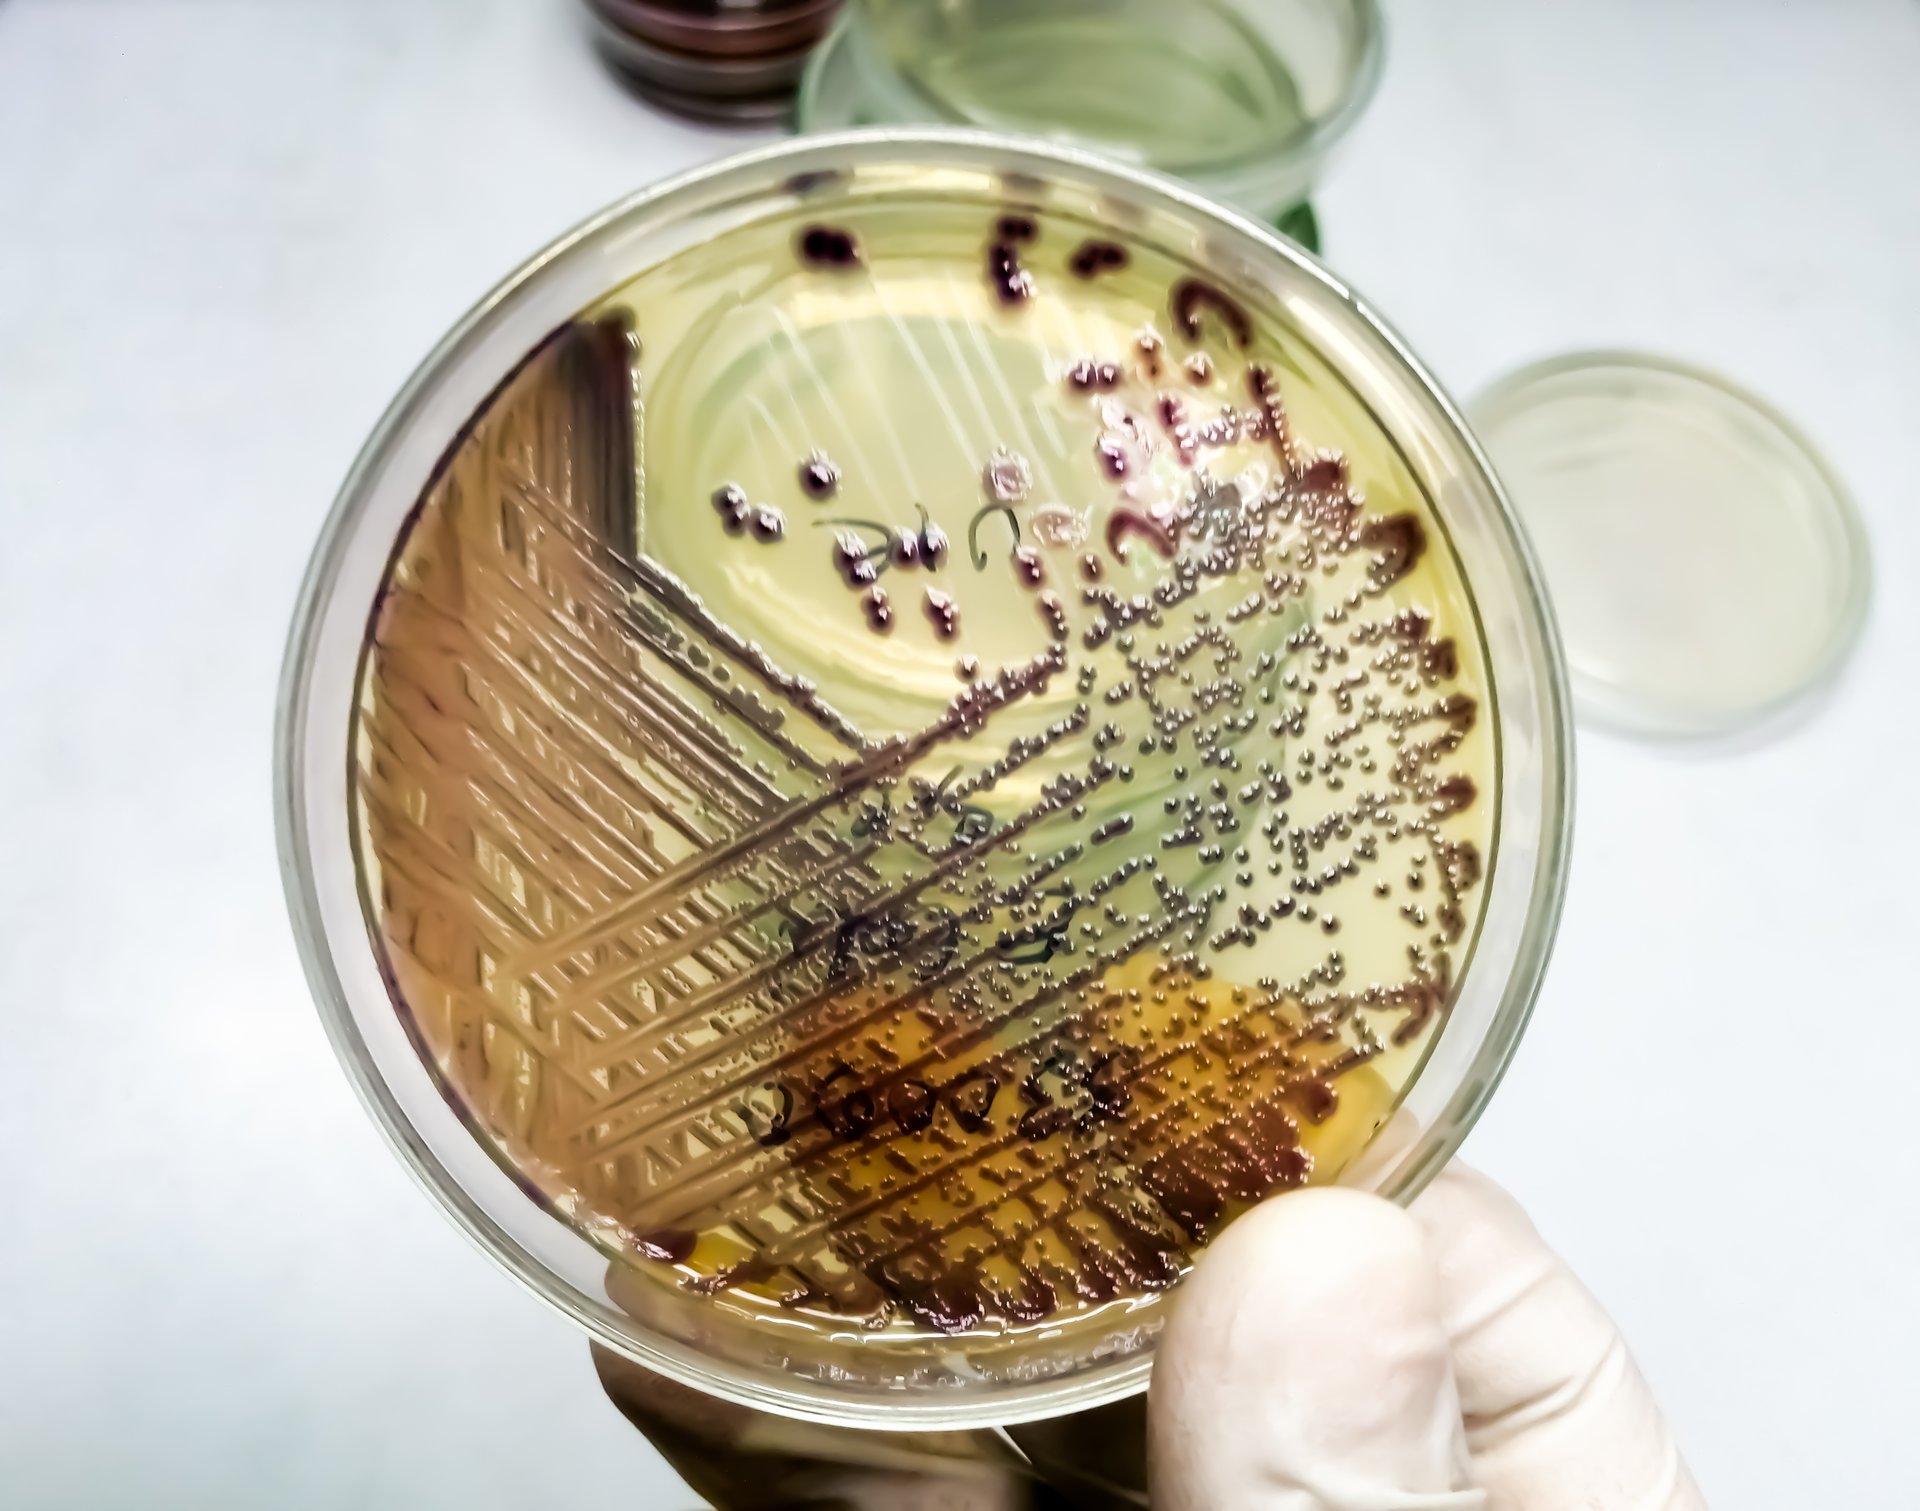 bacteria-colony-of-escherichia-coli-or-ecoli-in-culture-media-plate (1)